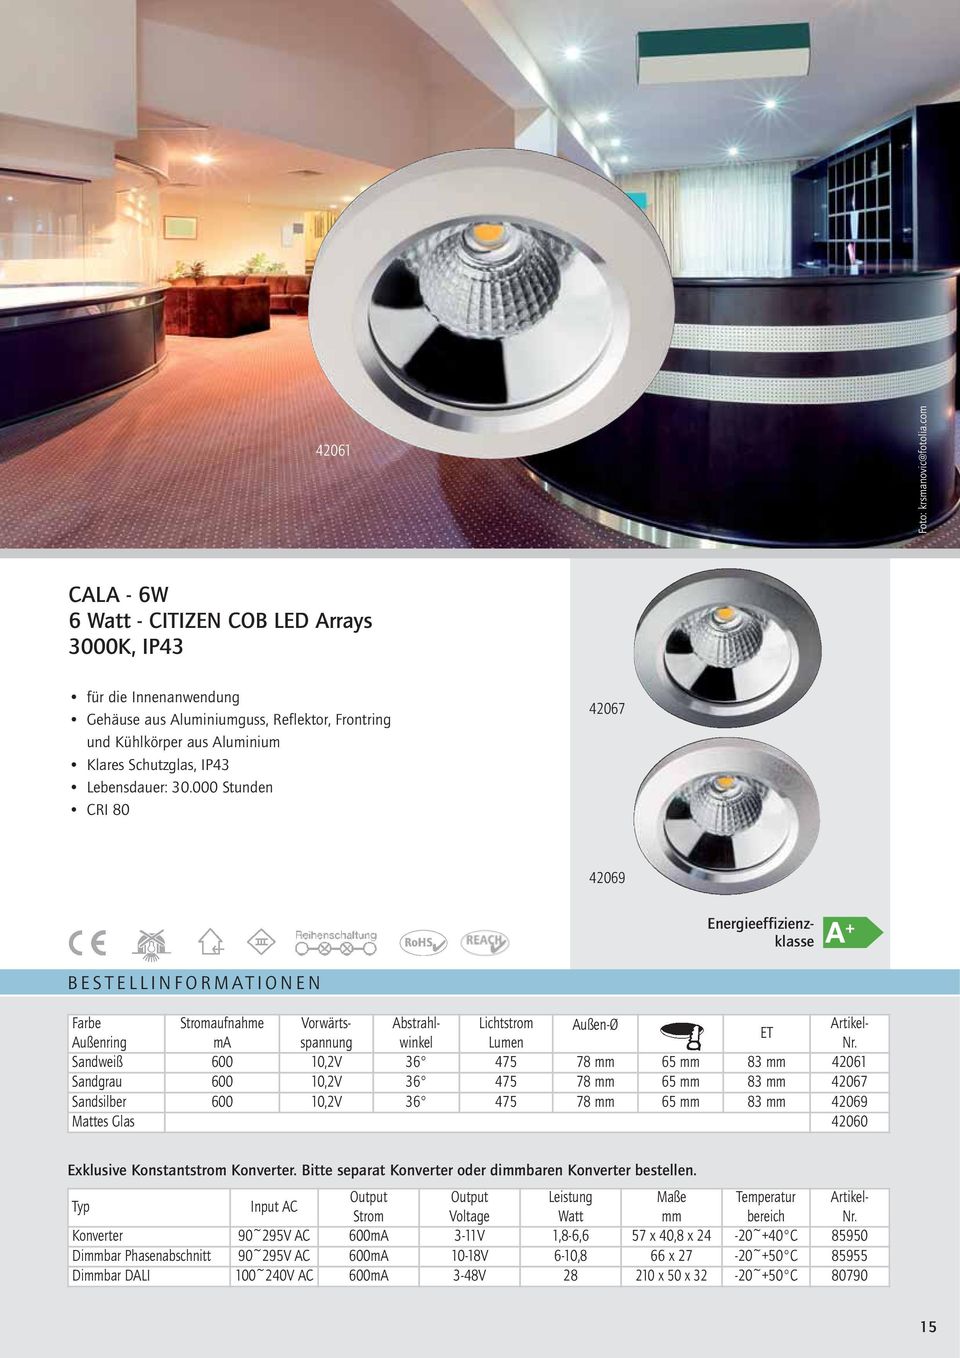 000 Stunden CRI 80 42067 42069 A + Energieeffizienzklasse Farbe Stromaufnahme Vorwärtsspannunwinkel Lumen Nr.